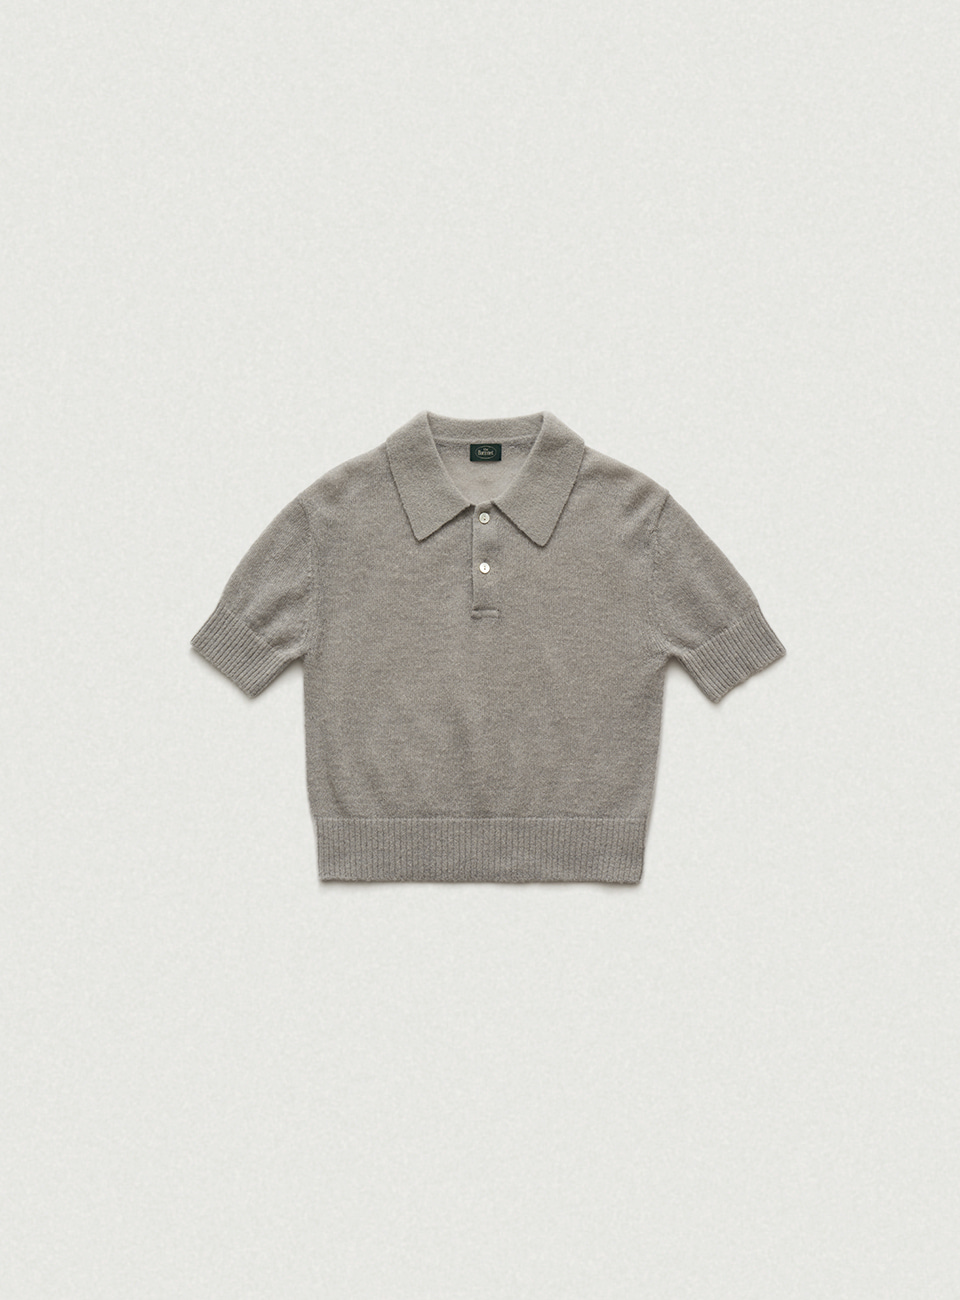 Grey Alpaca Knit Polo Shirt [4월 중순 순차 배송]